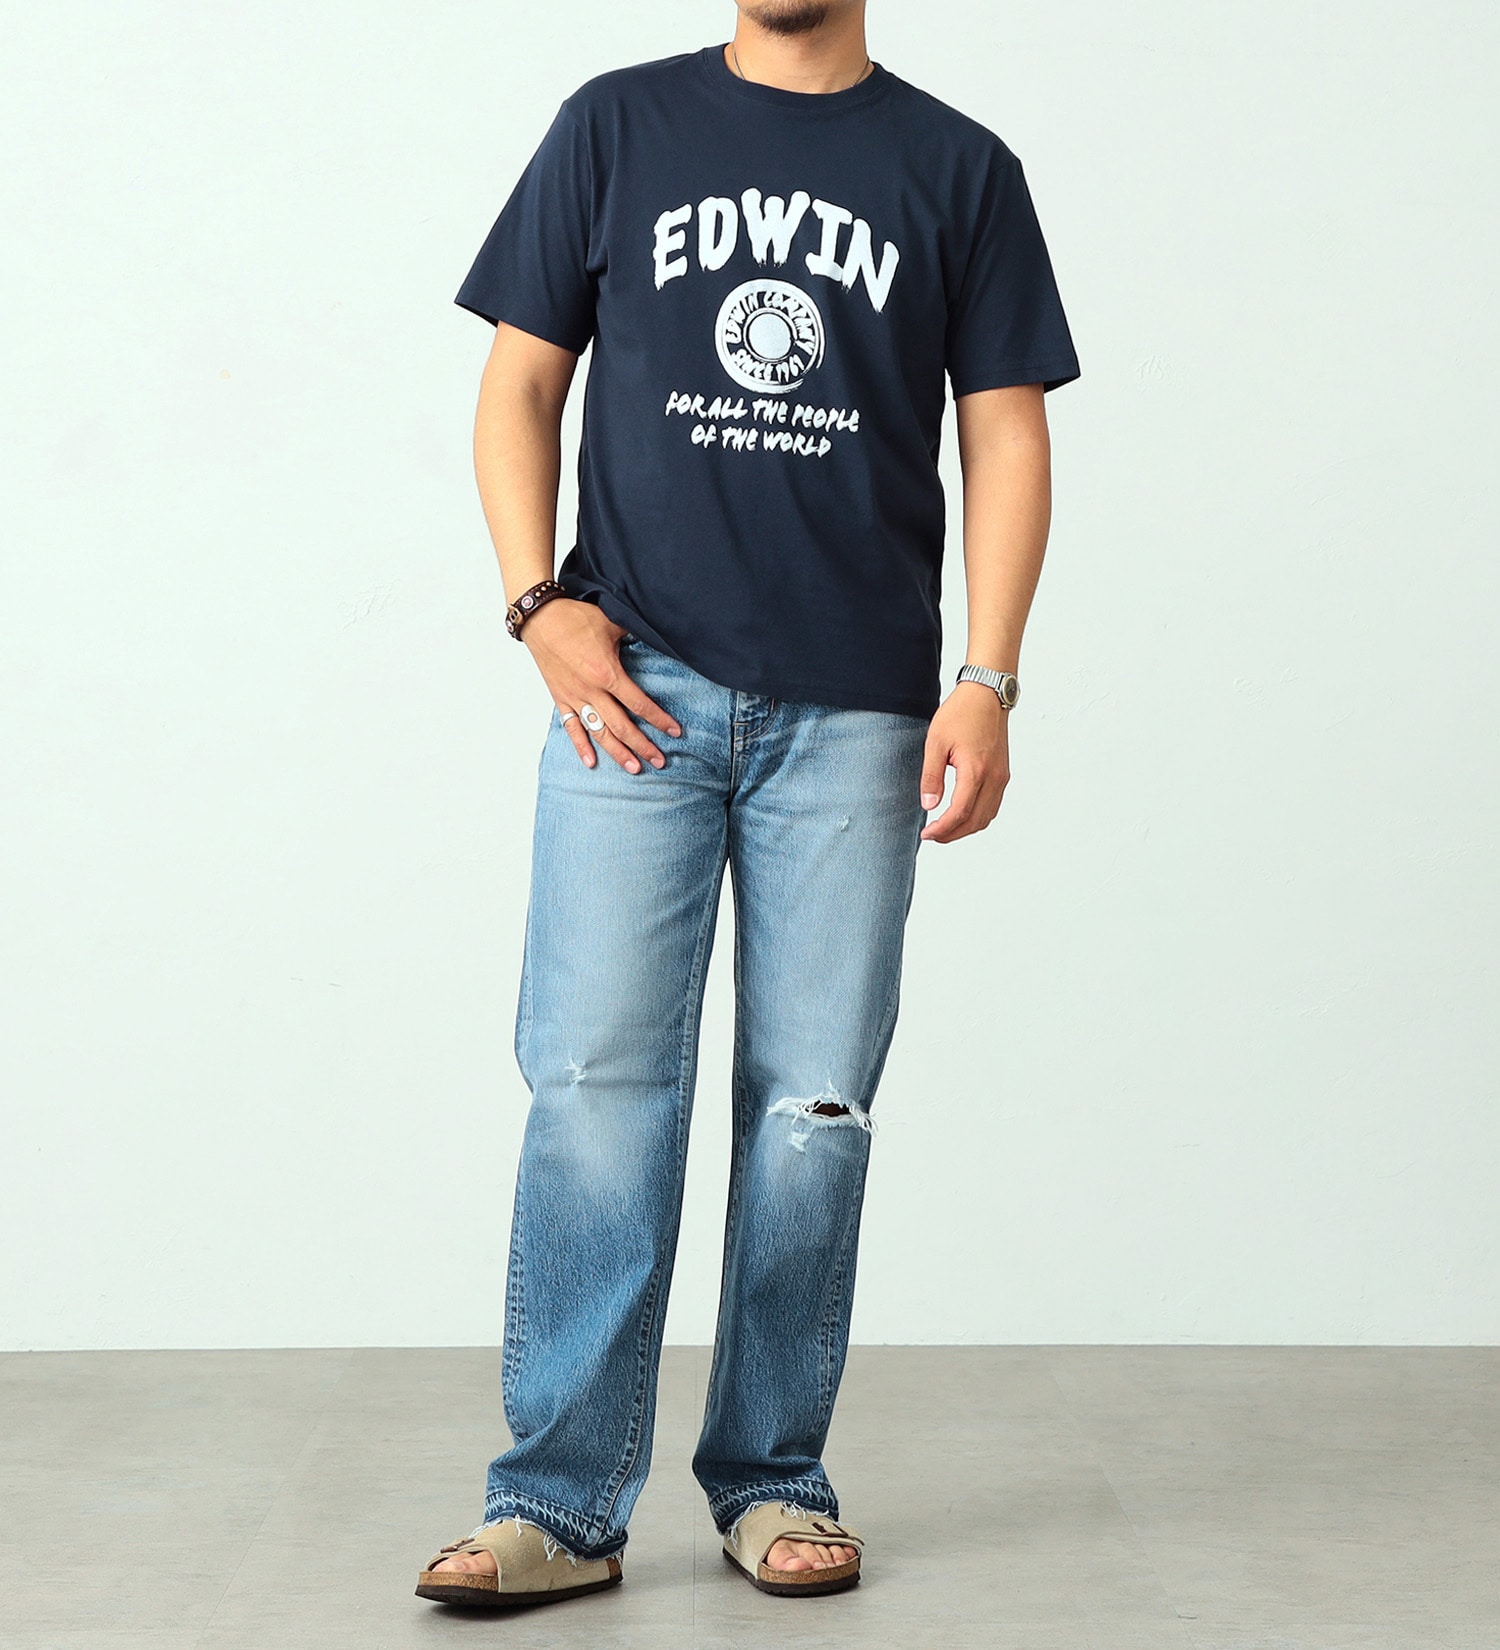 EDWIN(エドウイン)のロゴプリント半袖Tシャツ【アウトレット店舗・WEB限定】|トップス/Tシャツ/カットソー/メンズ|ネイビー